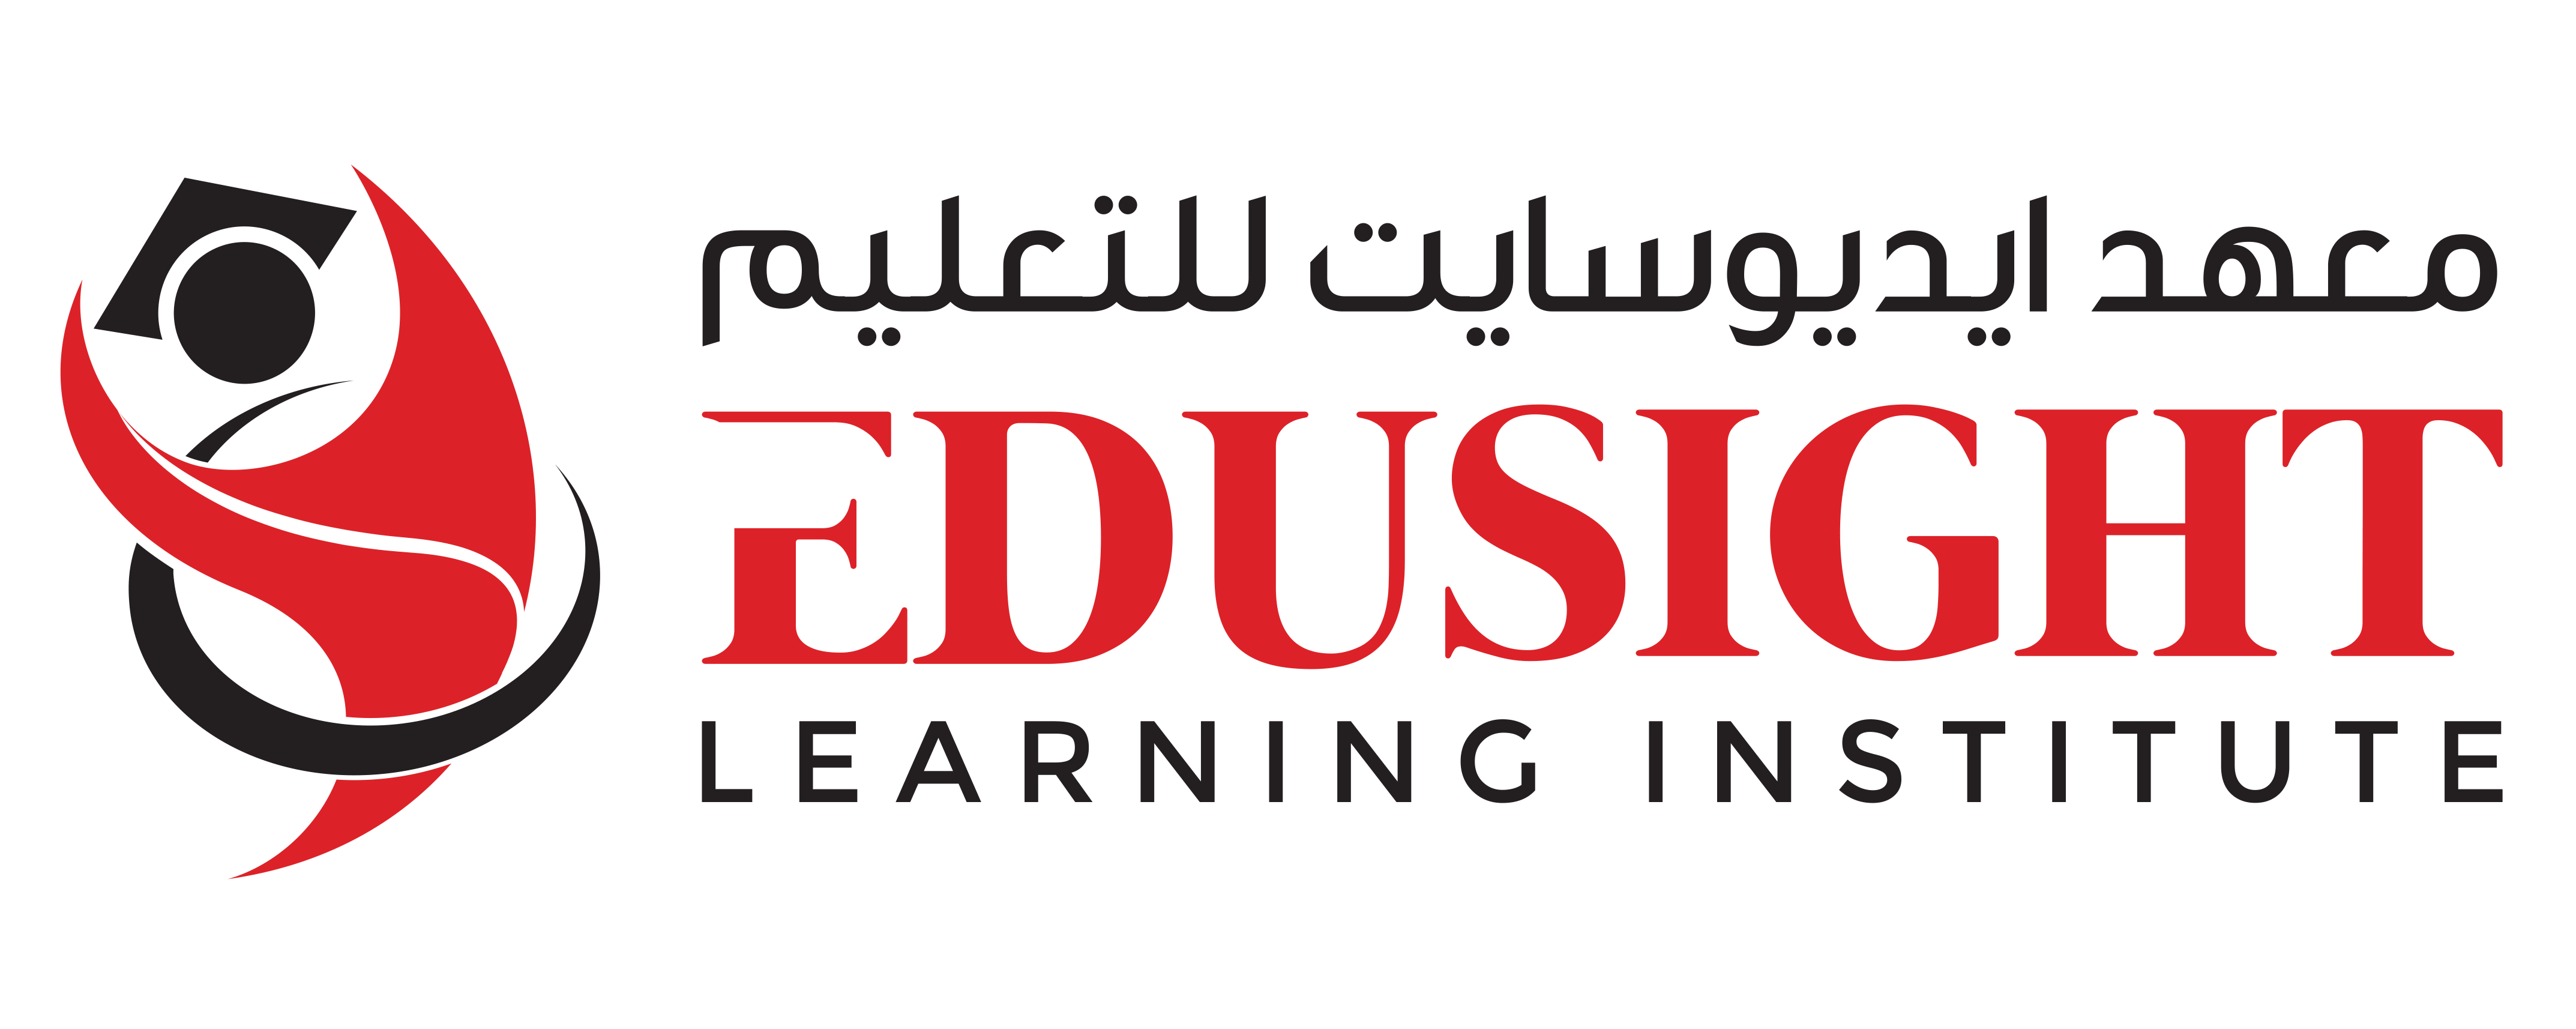 Edusight Learning Institute Logo